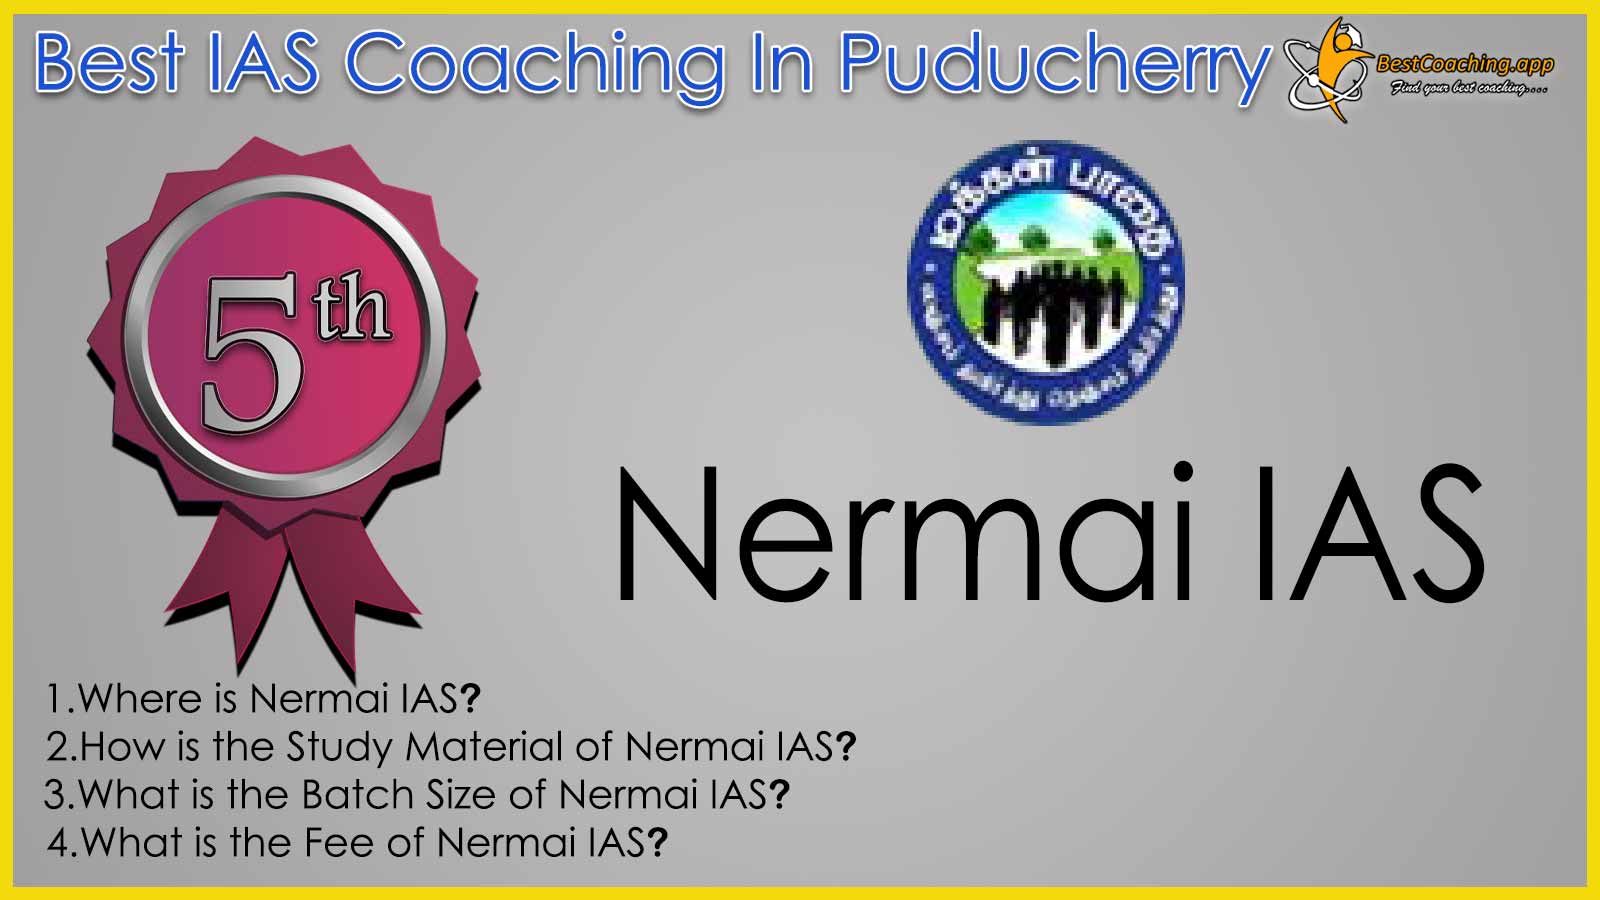 Nermai IAS Coaching